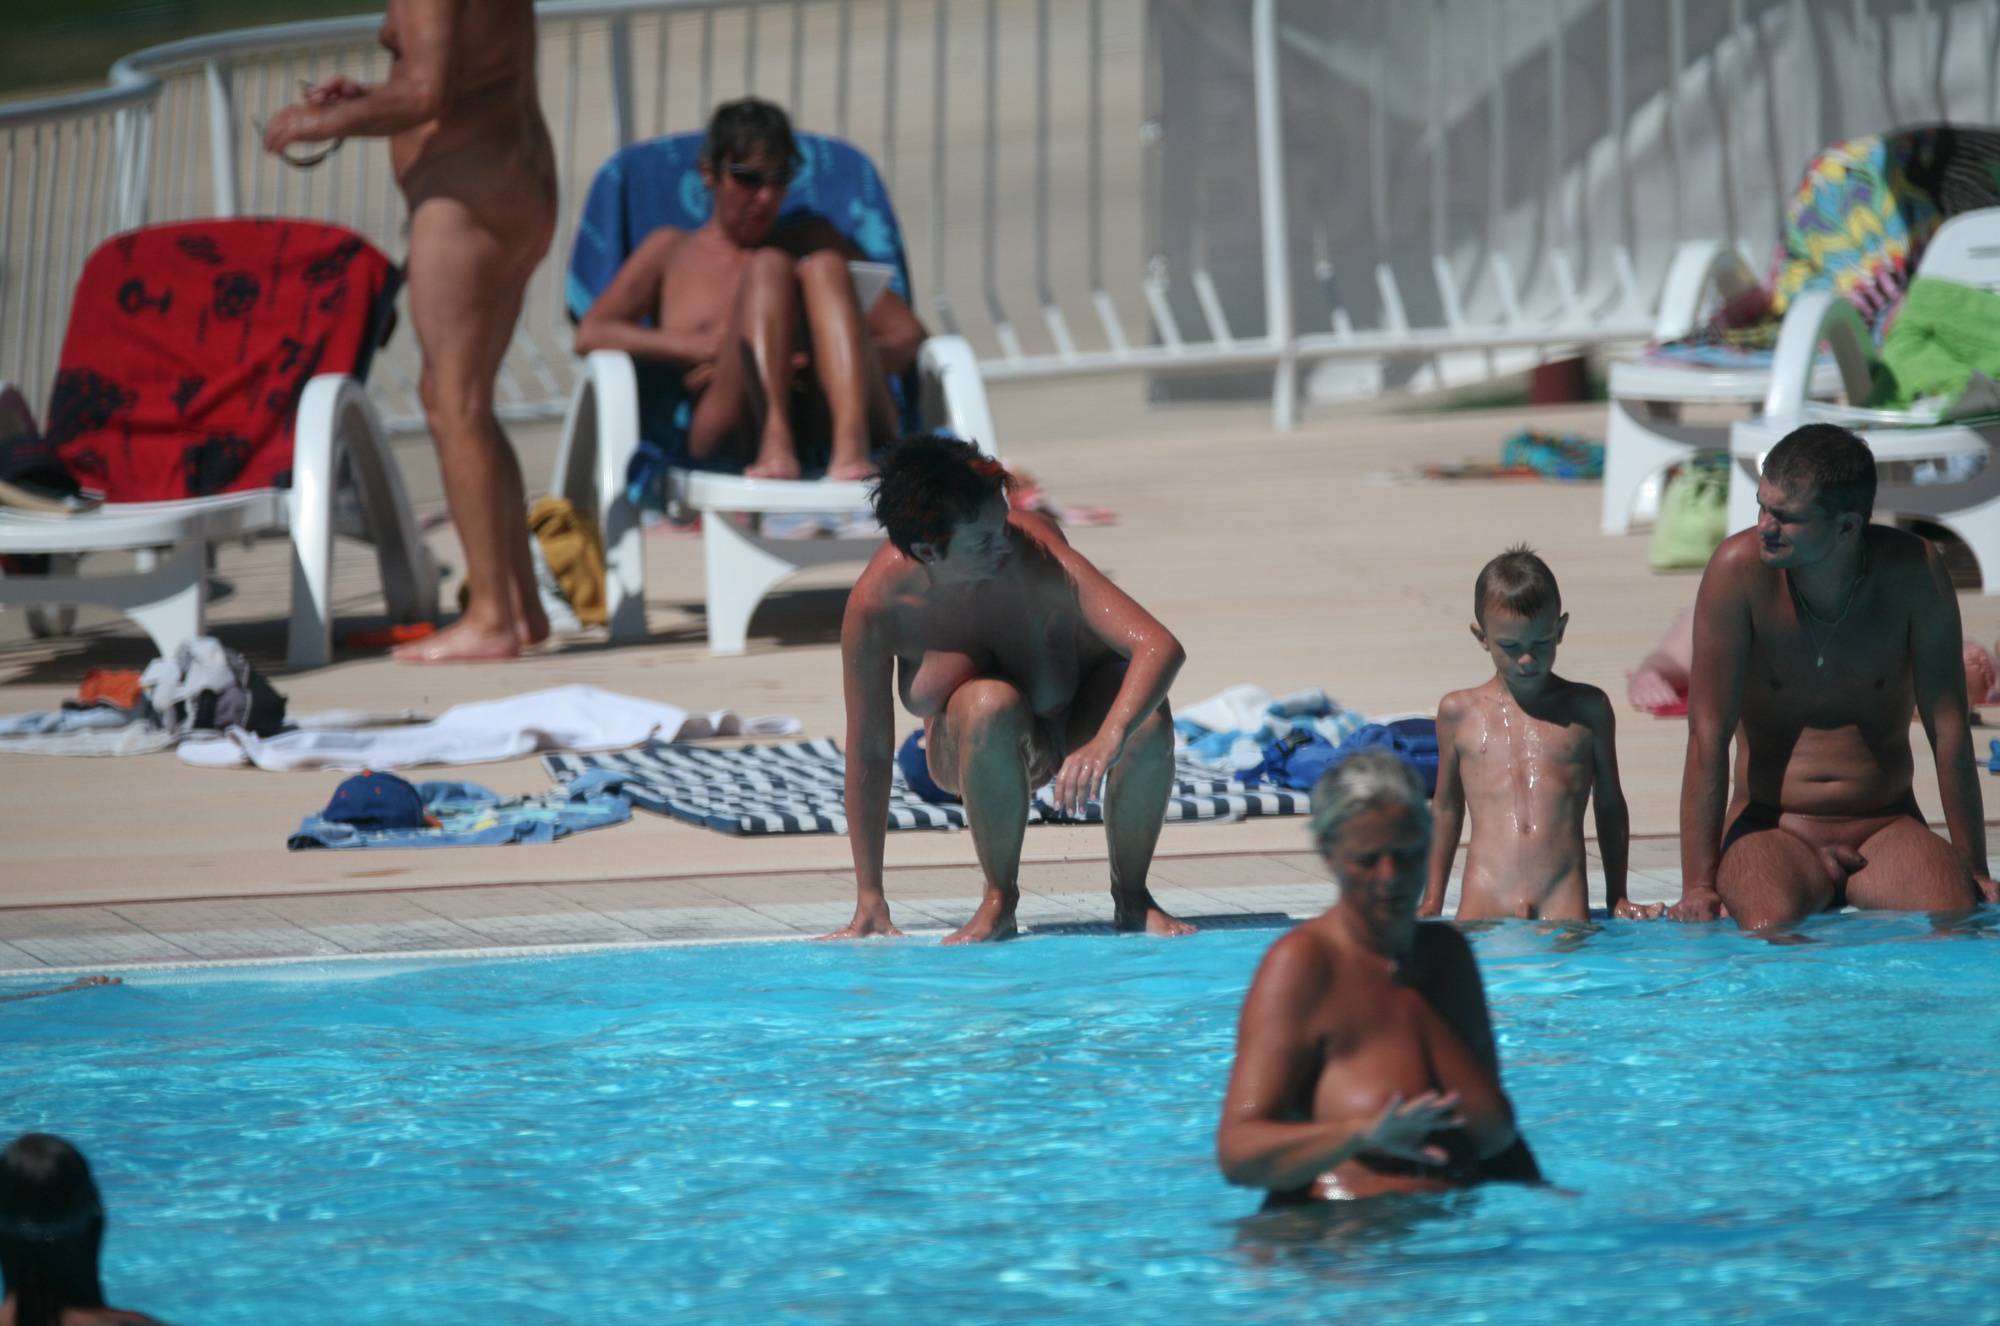 Pool-Shore Nude Activities - 1